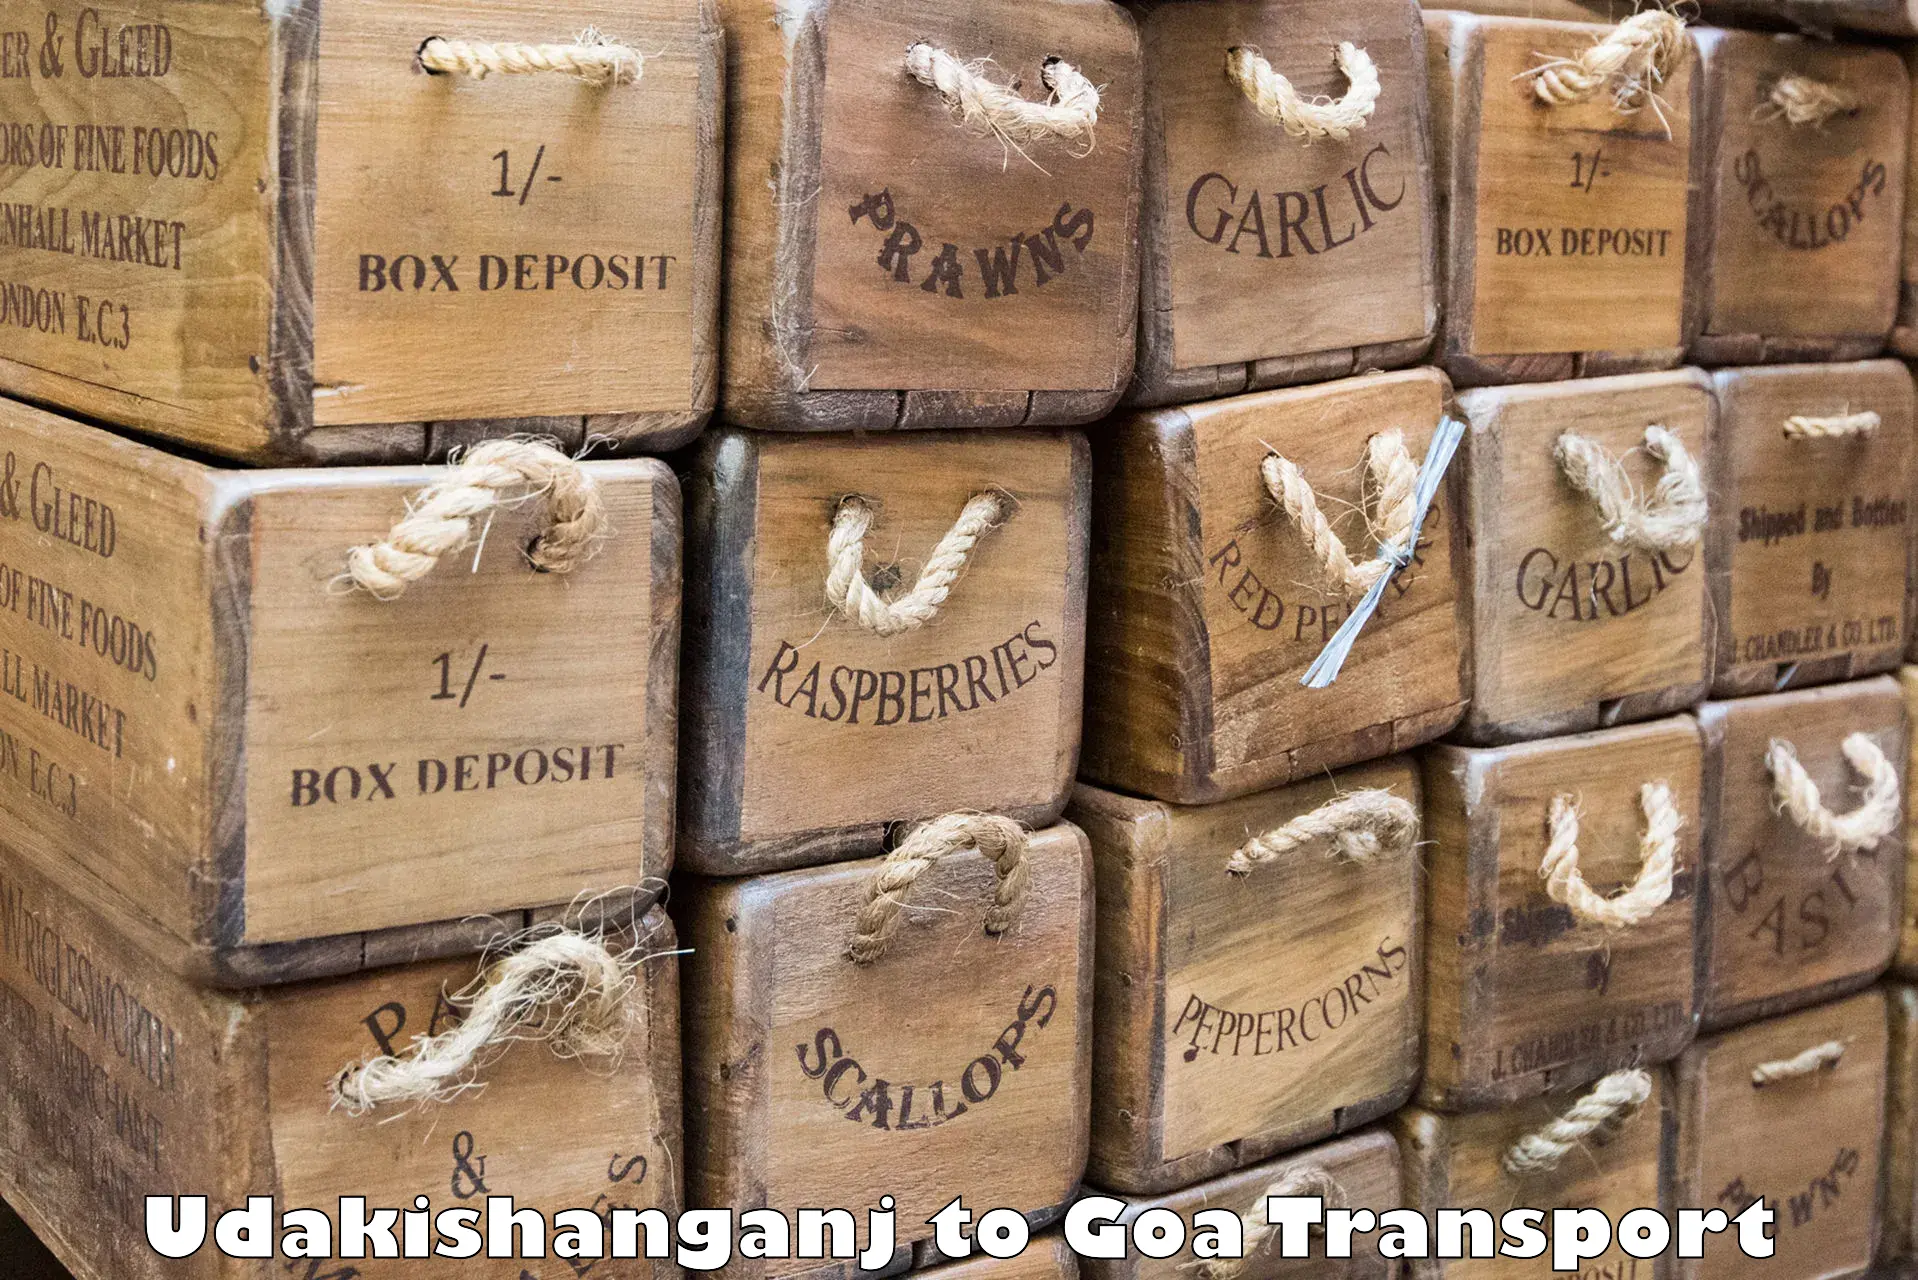 International cargo transportation services Udakishanganj to Mormugao Port